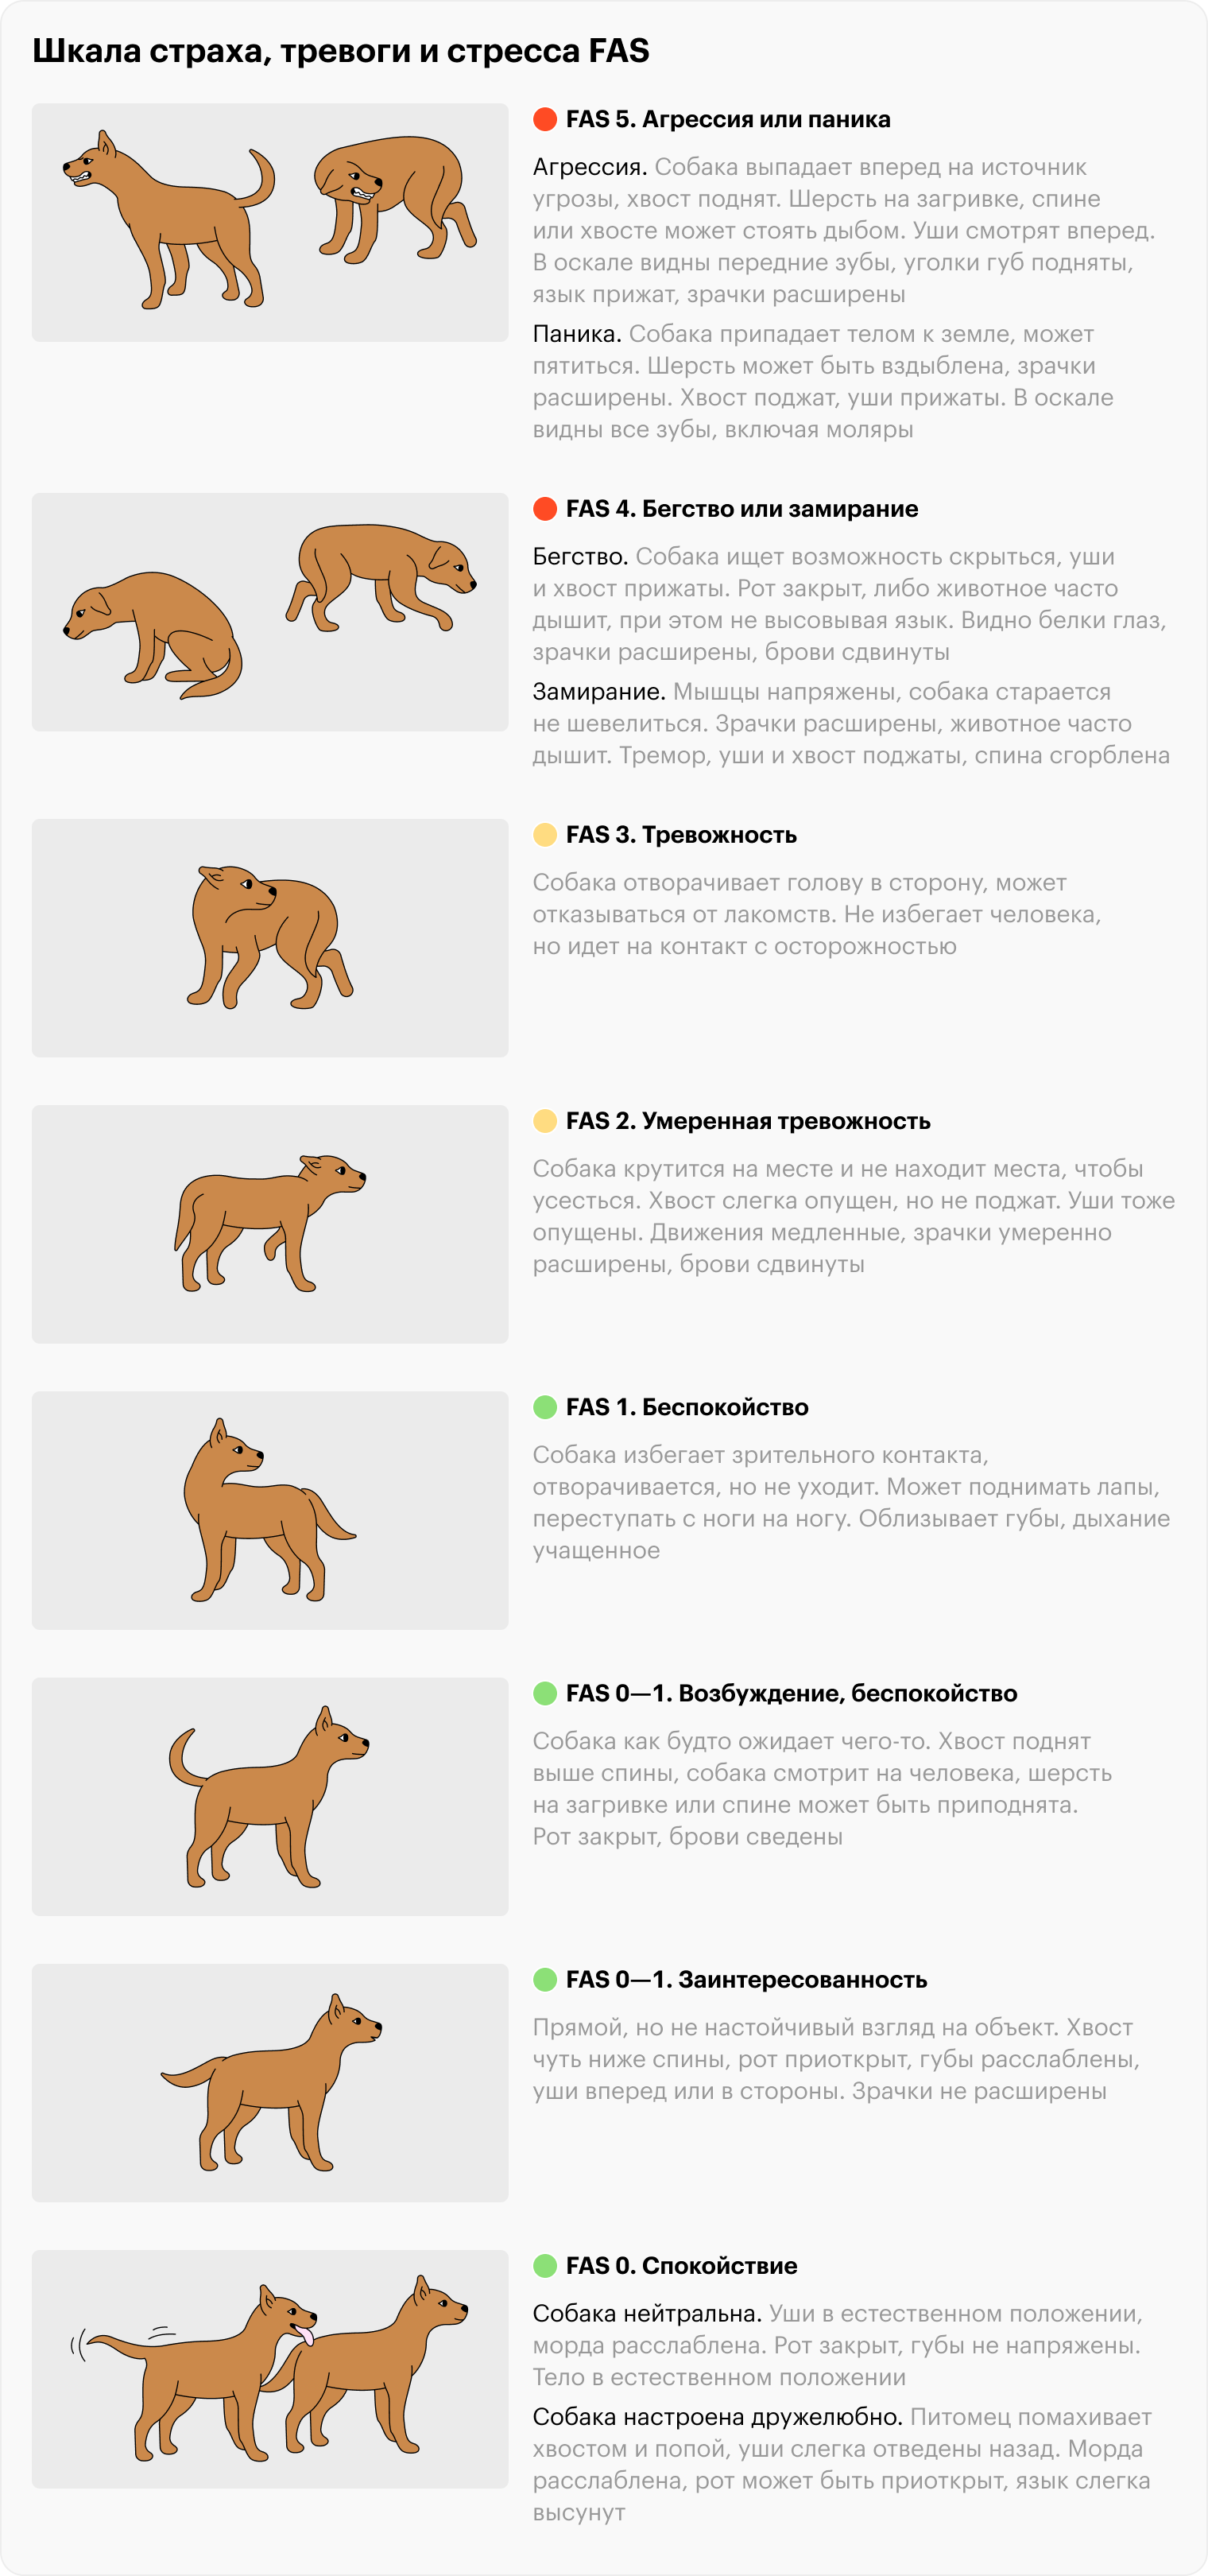 FAS 4 и FAS 5 — красные зоны стресса. Собаке максимально некомфортно, она может проявлять агрессию. Источник: fearfreehappyhomes.com